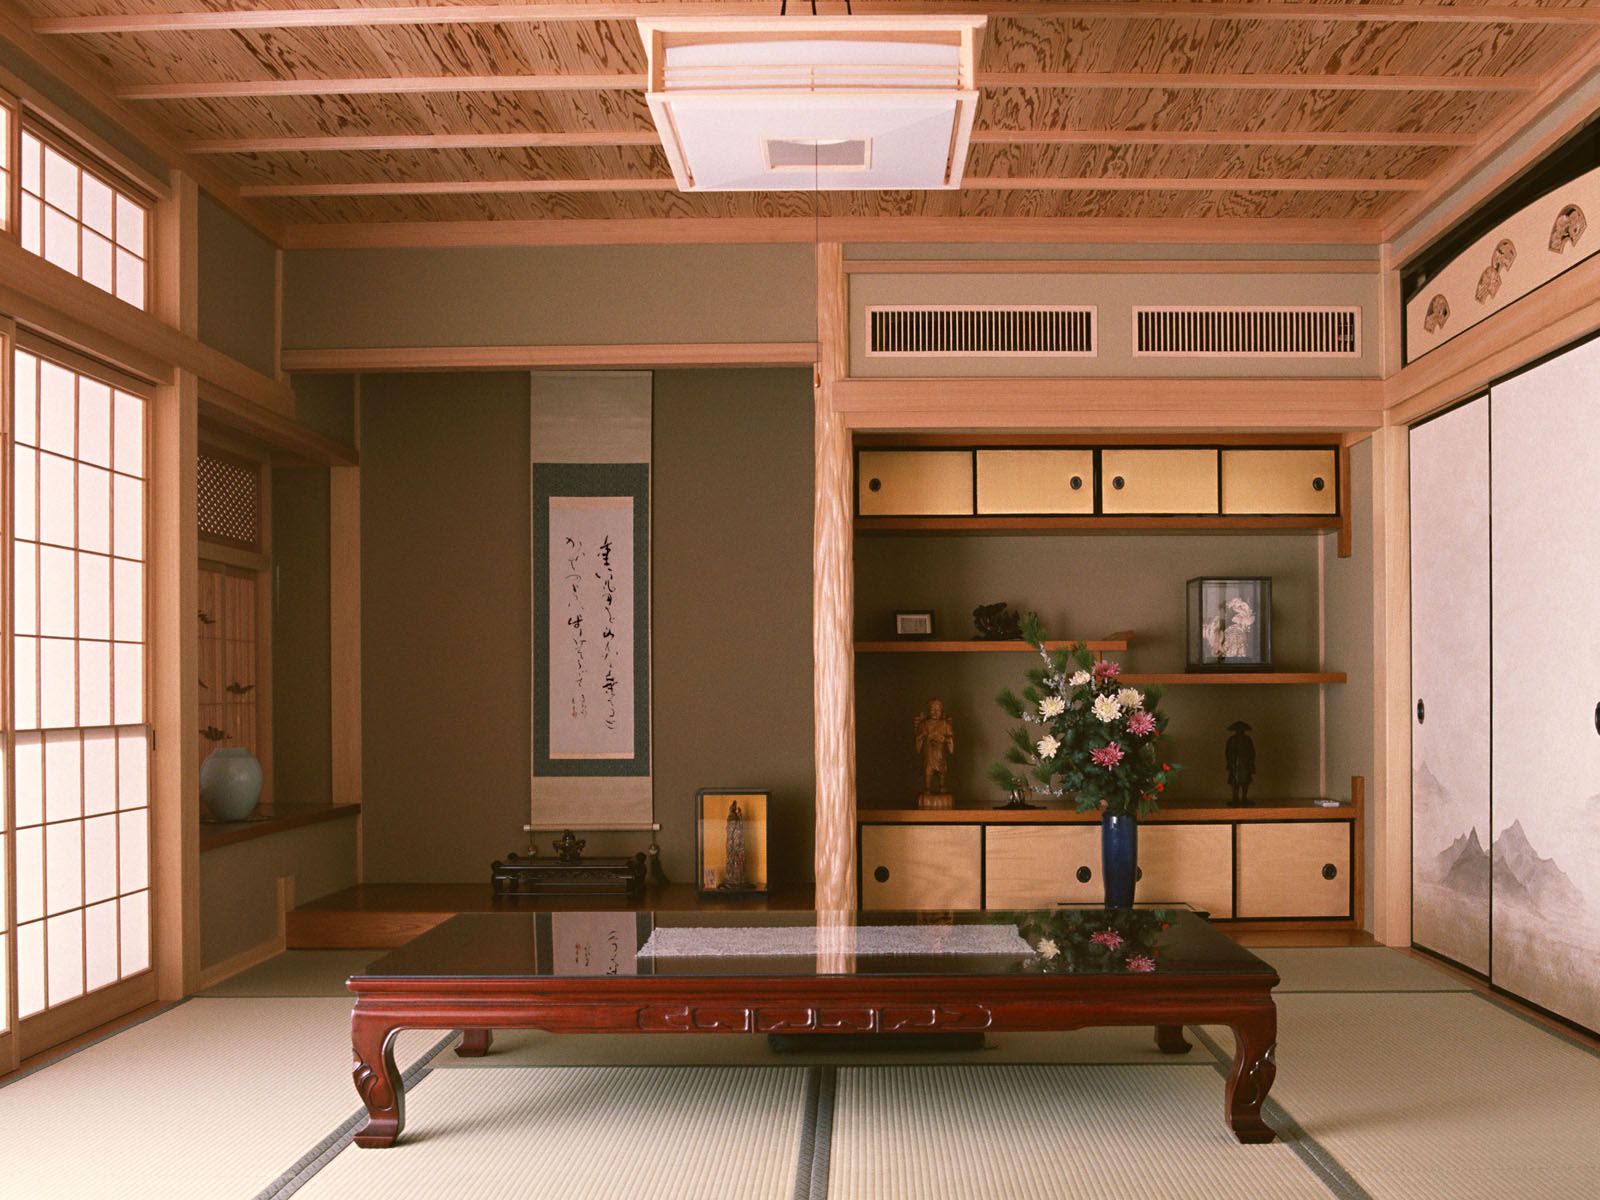 5 phong cách nội thất nhà ở Nhật Bản đáng học hỏi - Uii Concept